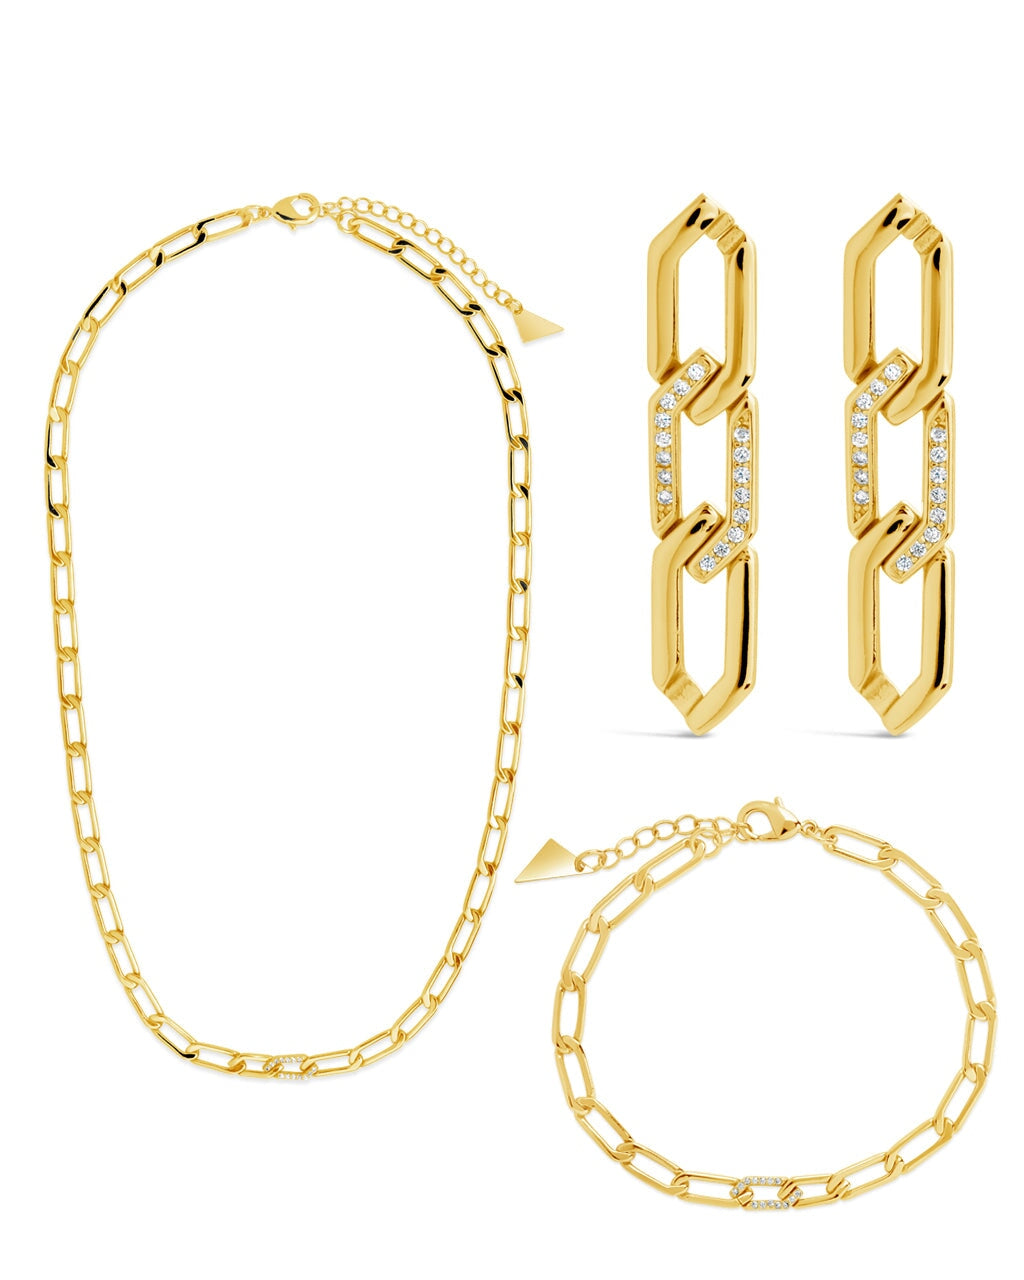 Kinslee CZ Chain Link Matching Set Bundles Sterling Forever Gold 